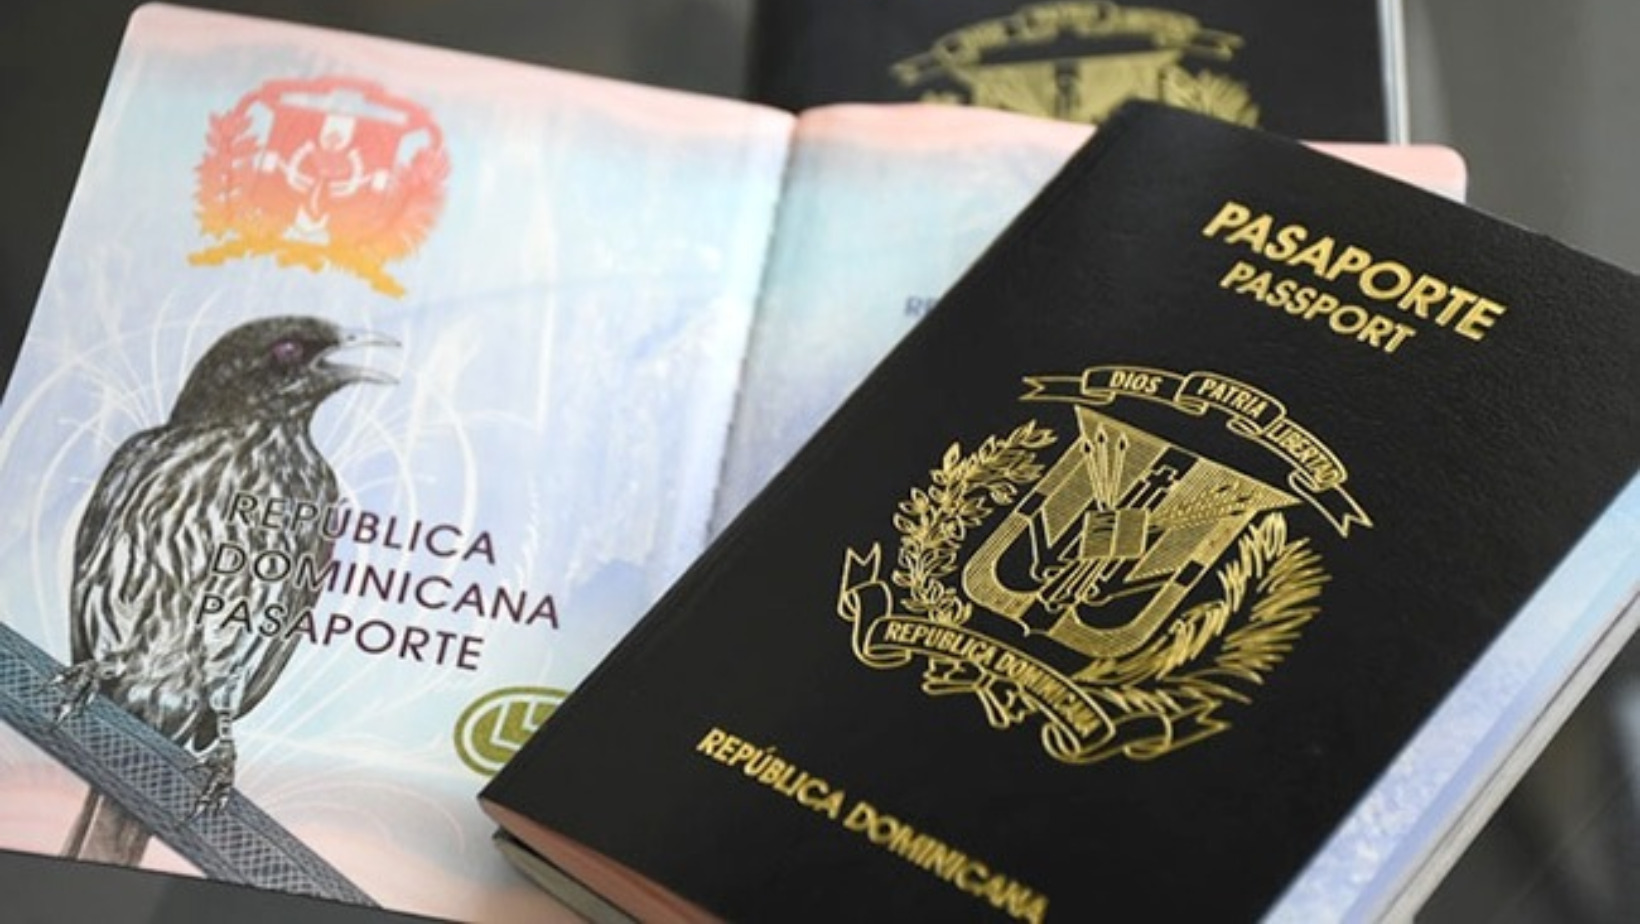 Pasaporte de República Dominicana. FOTO: Fuente externa